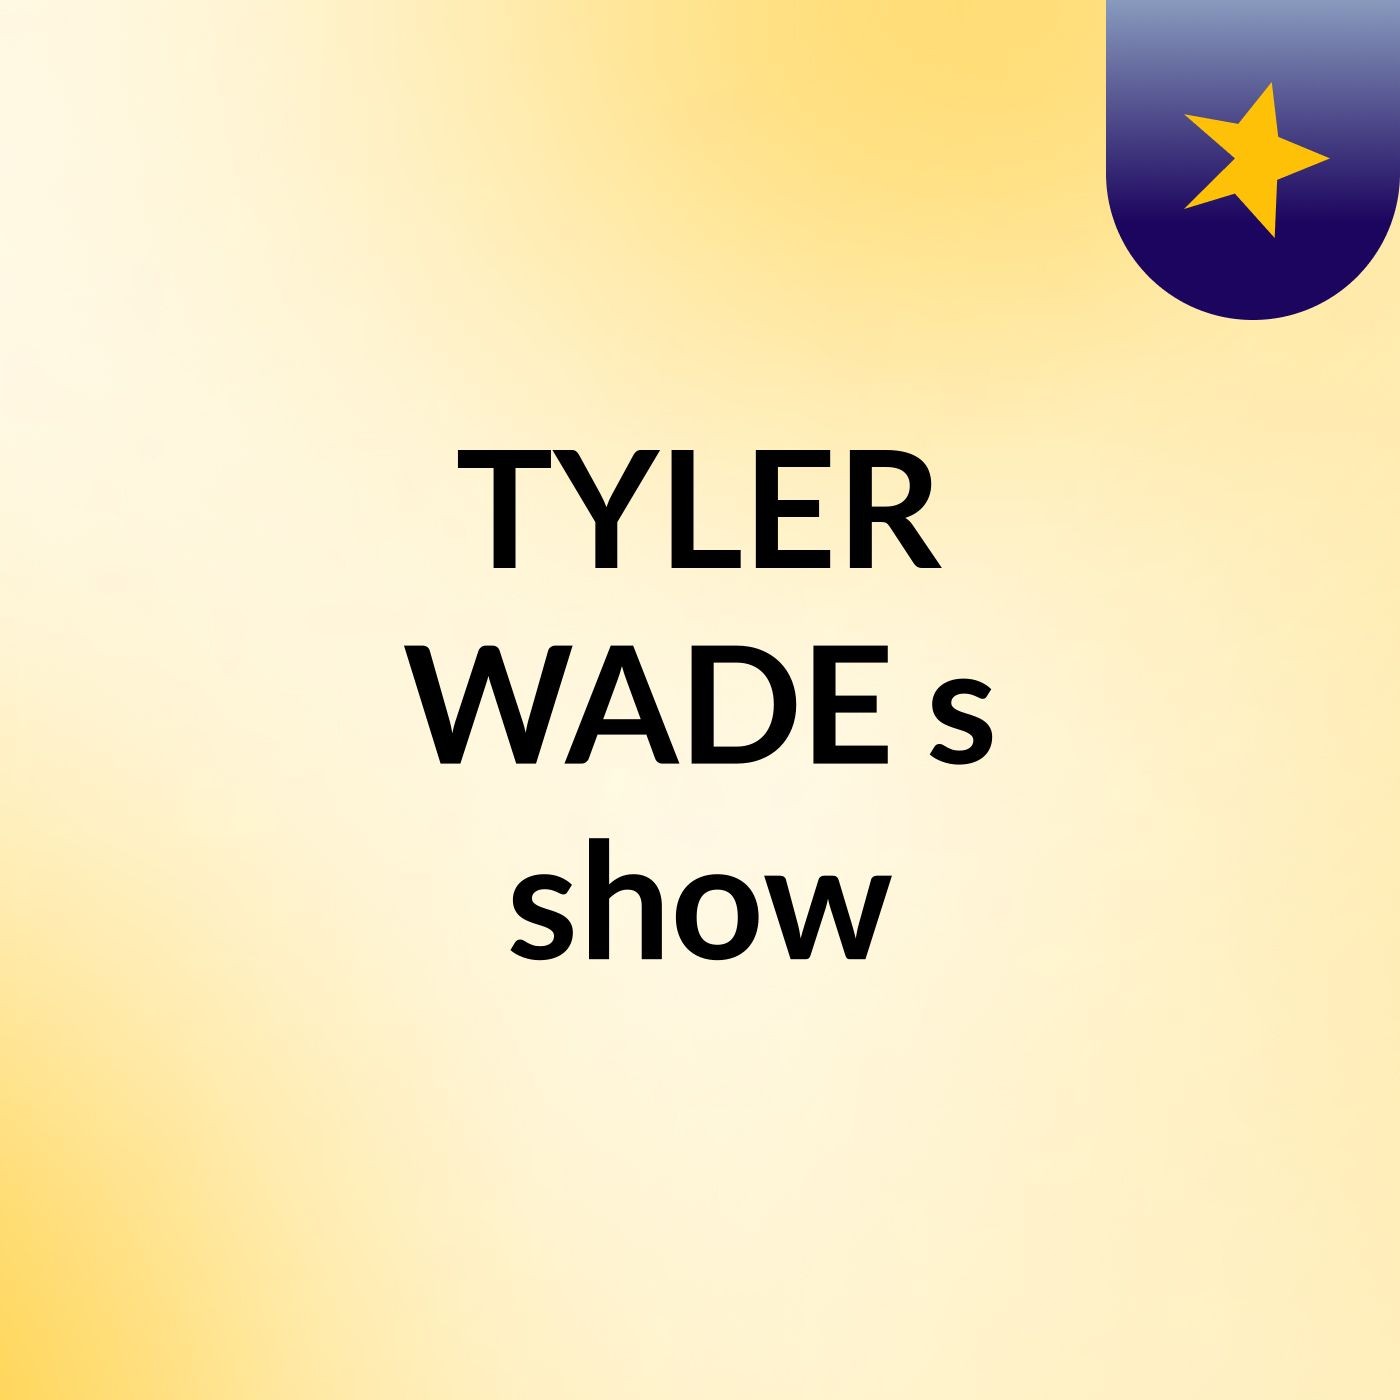 TYLER WADE's show